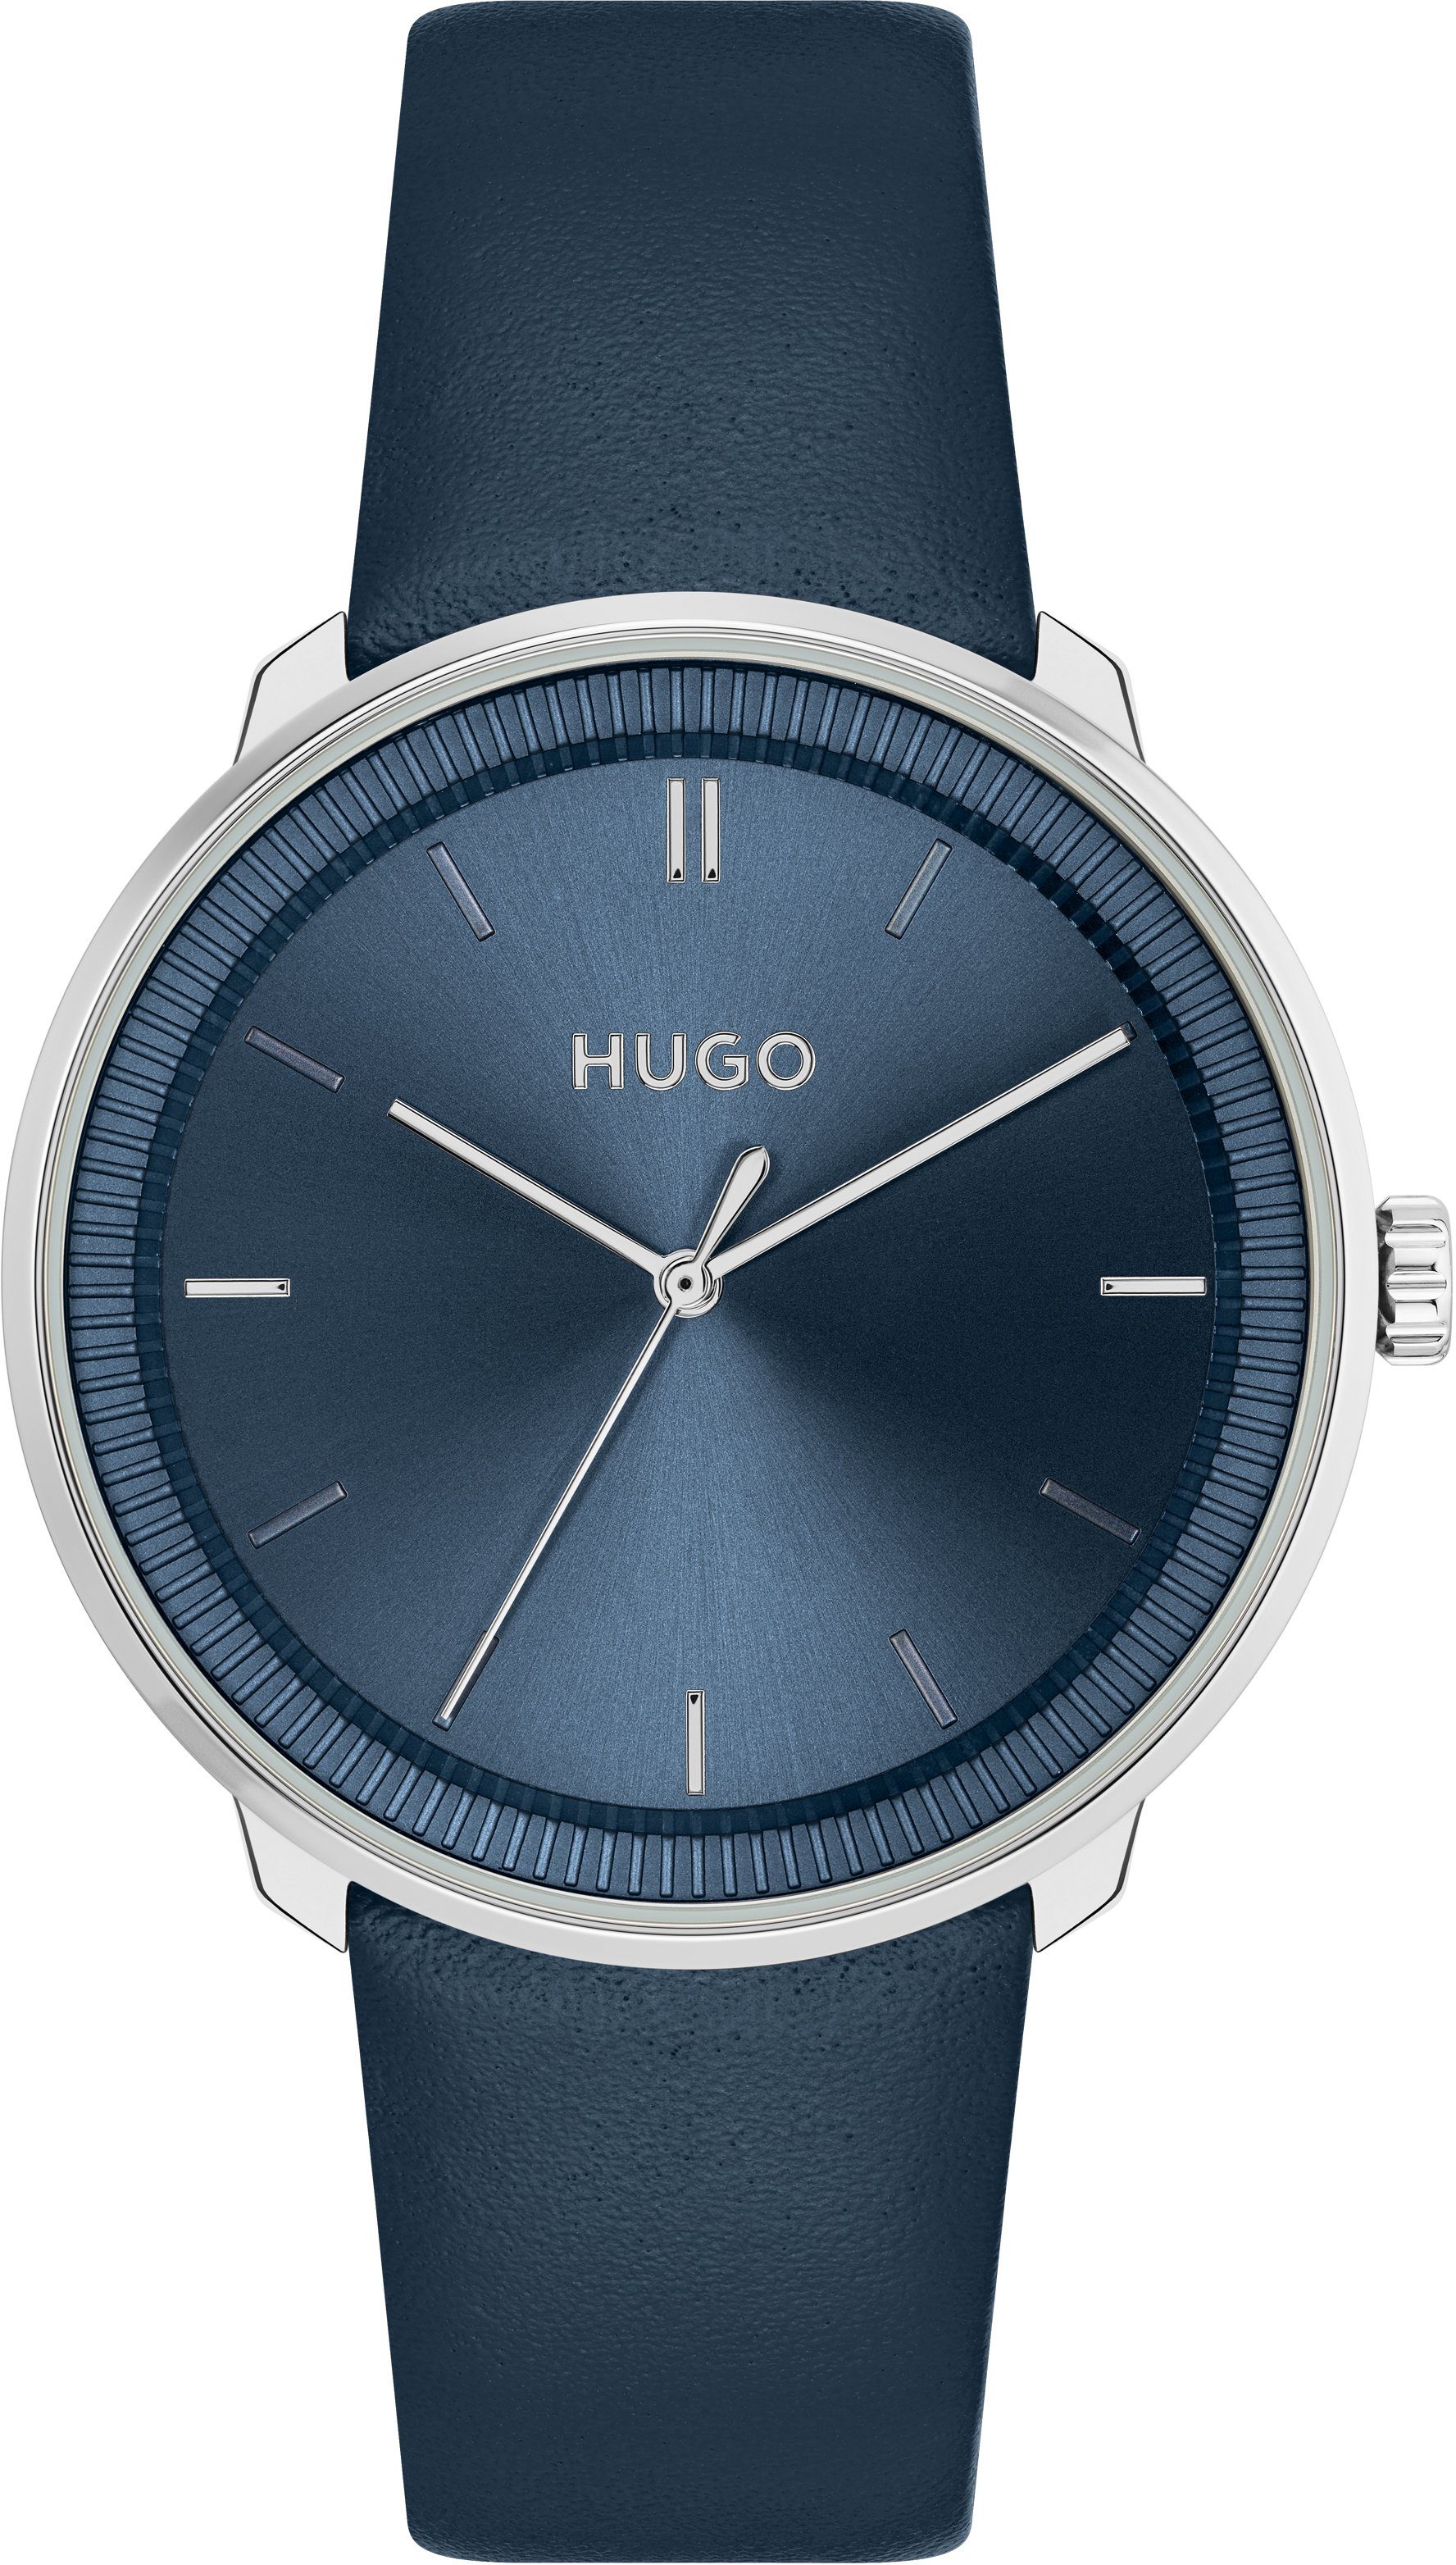 HUGO Quarzuhr #FLUID, 1520025, mit Wechselband), (Set, als Geschenk 2-tlg., Uhr auch ideal